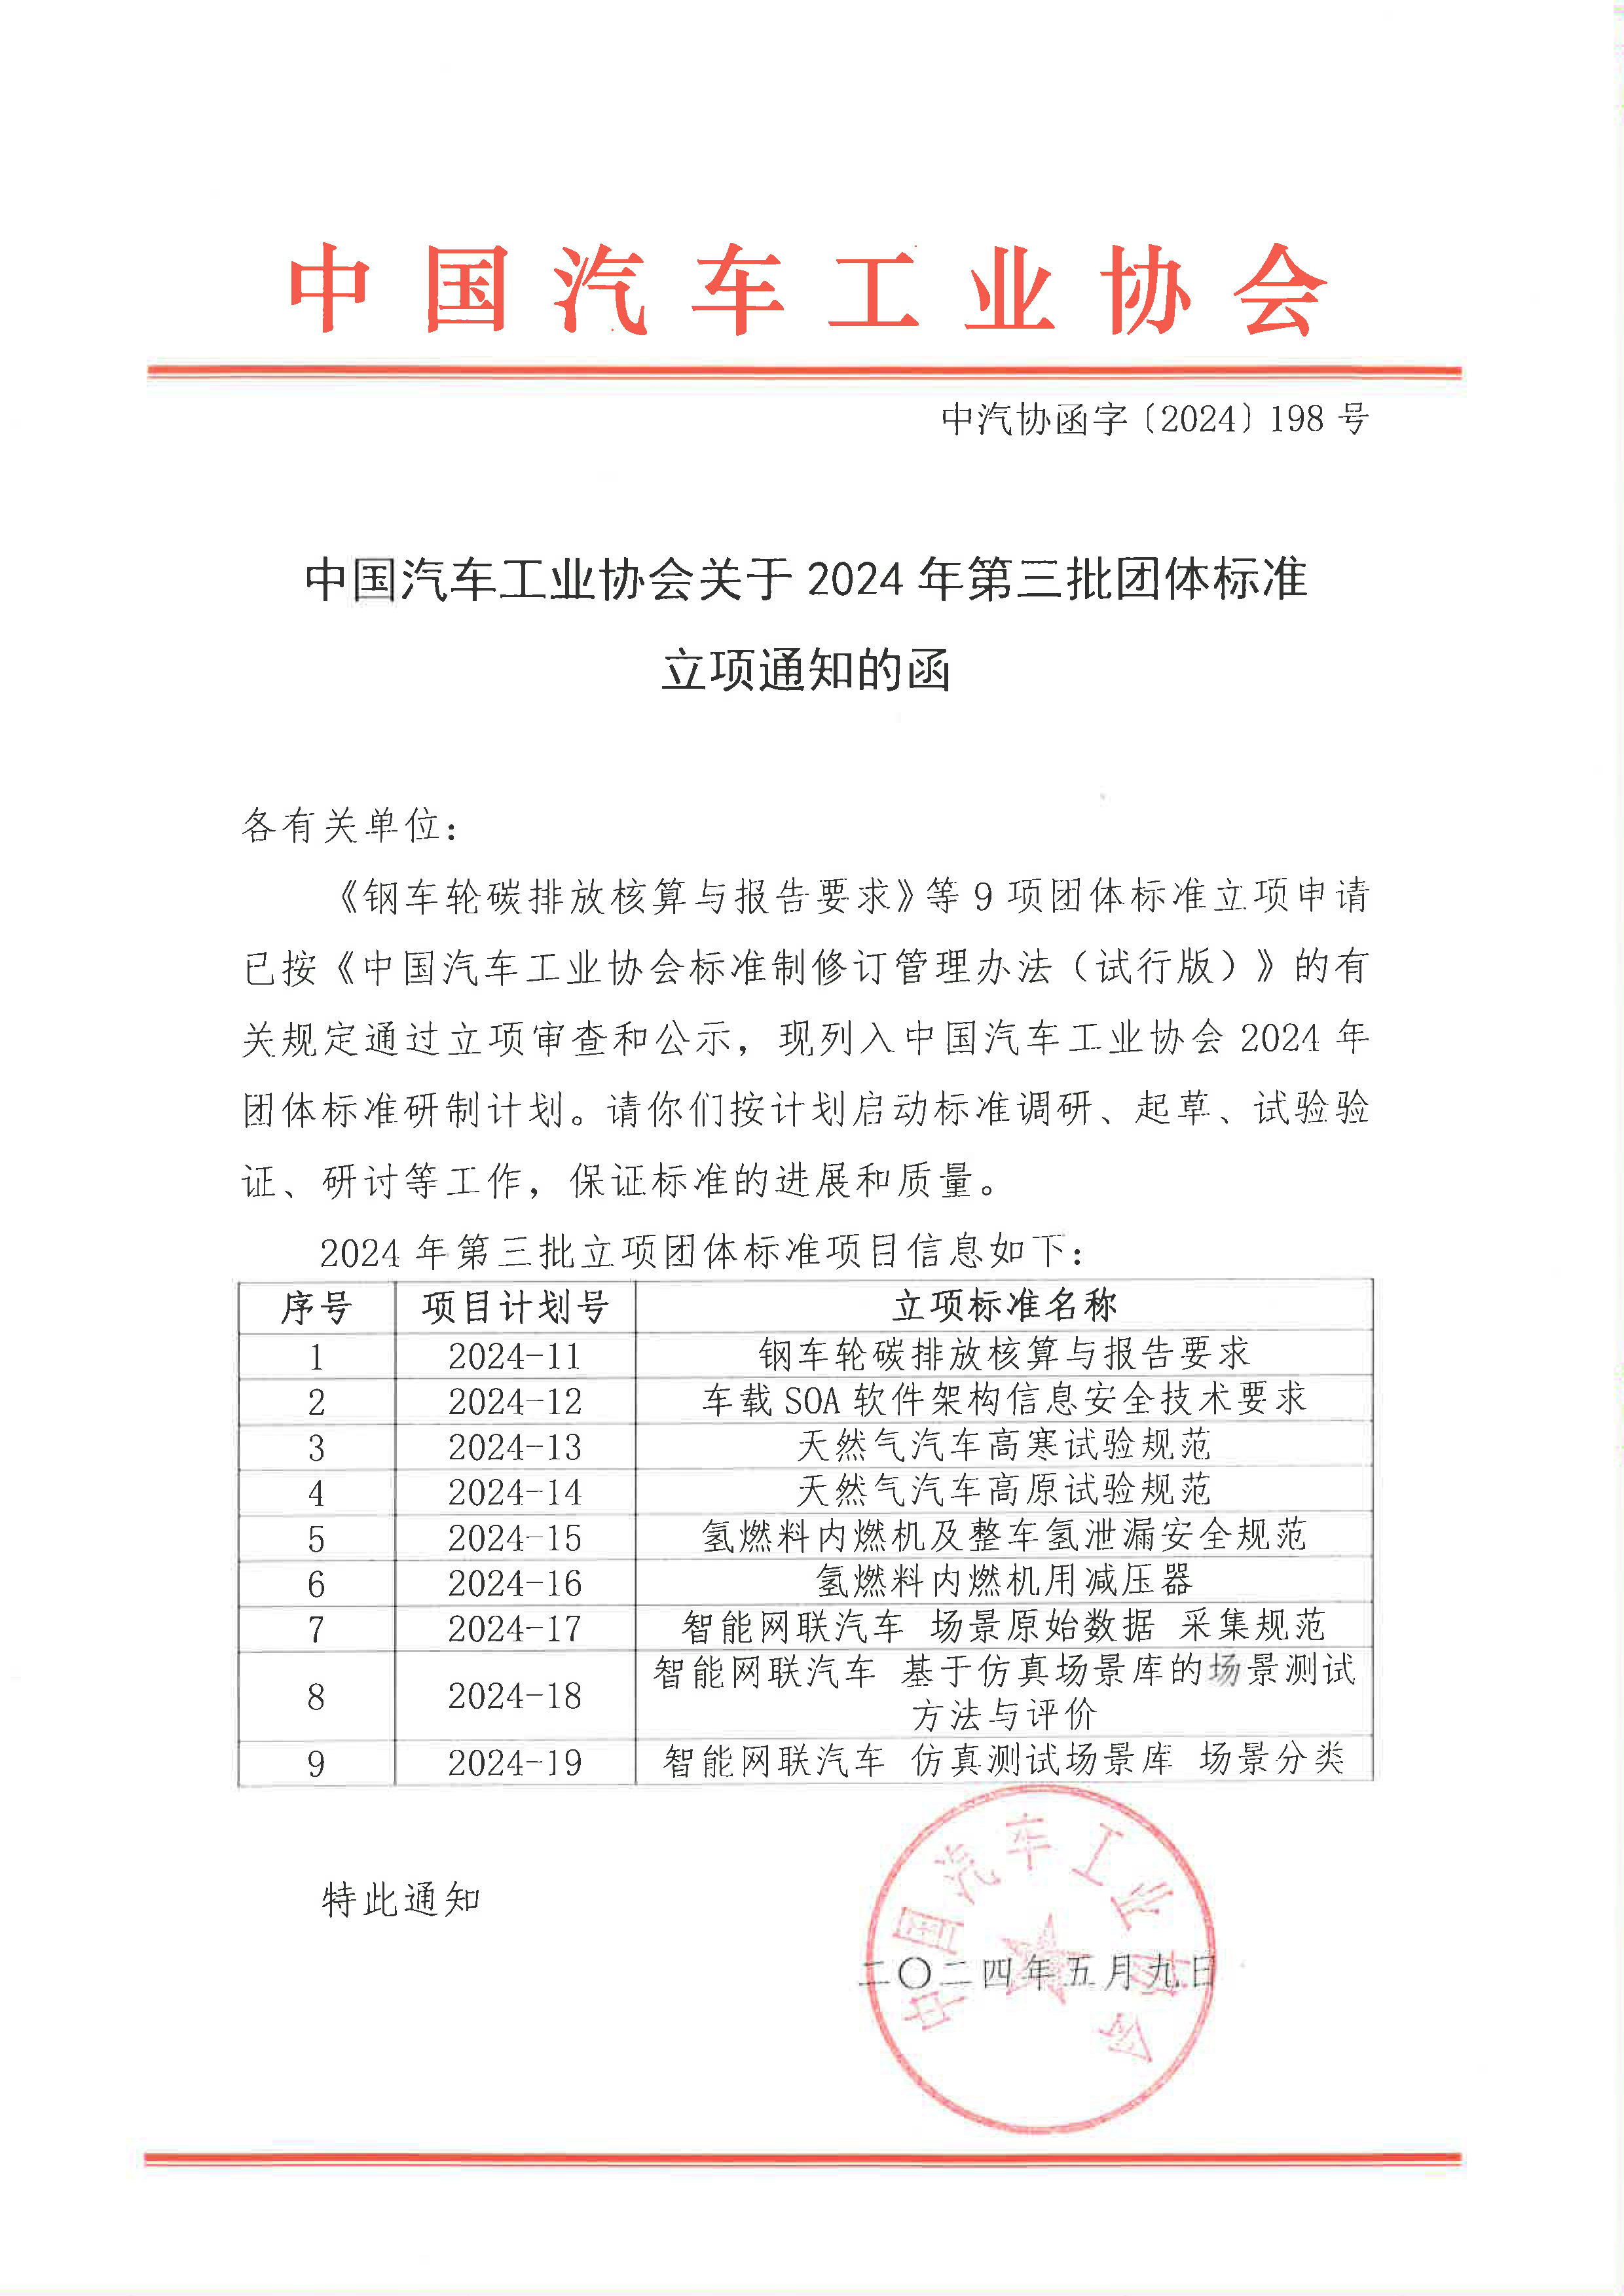 中国汽车工业协会关于2024年第三批团体标准立项通知的函